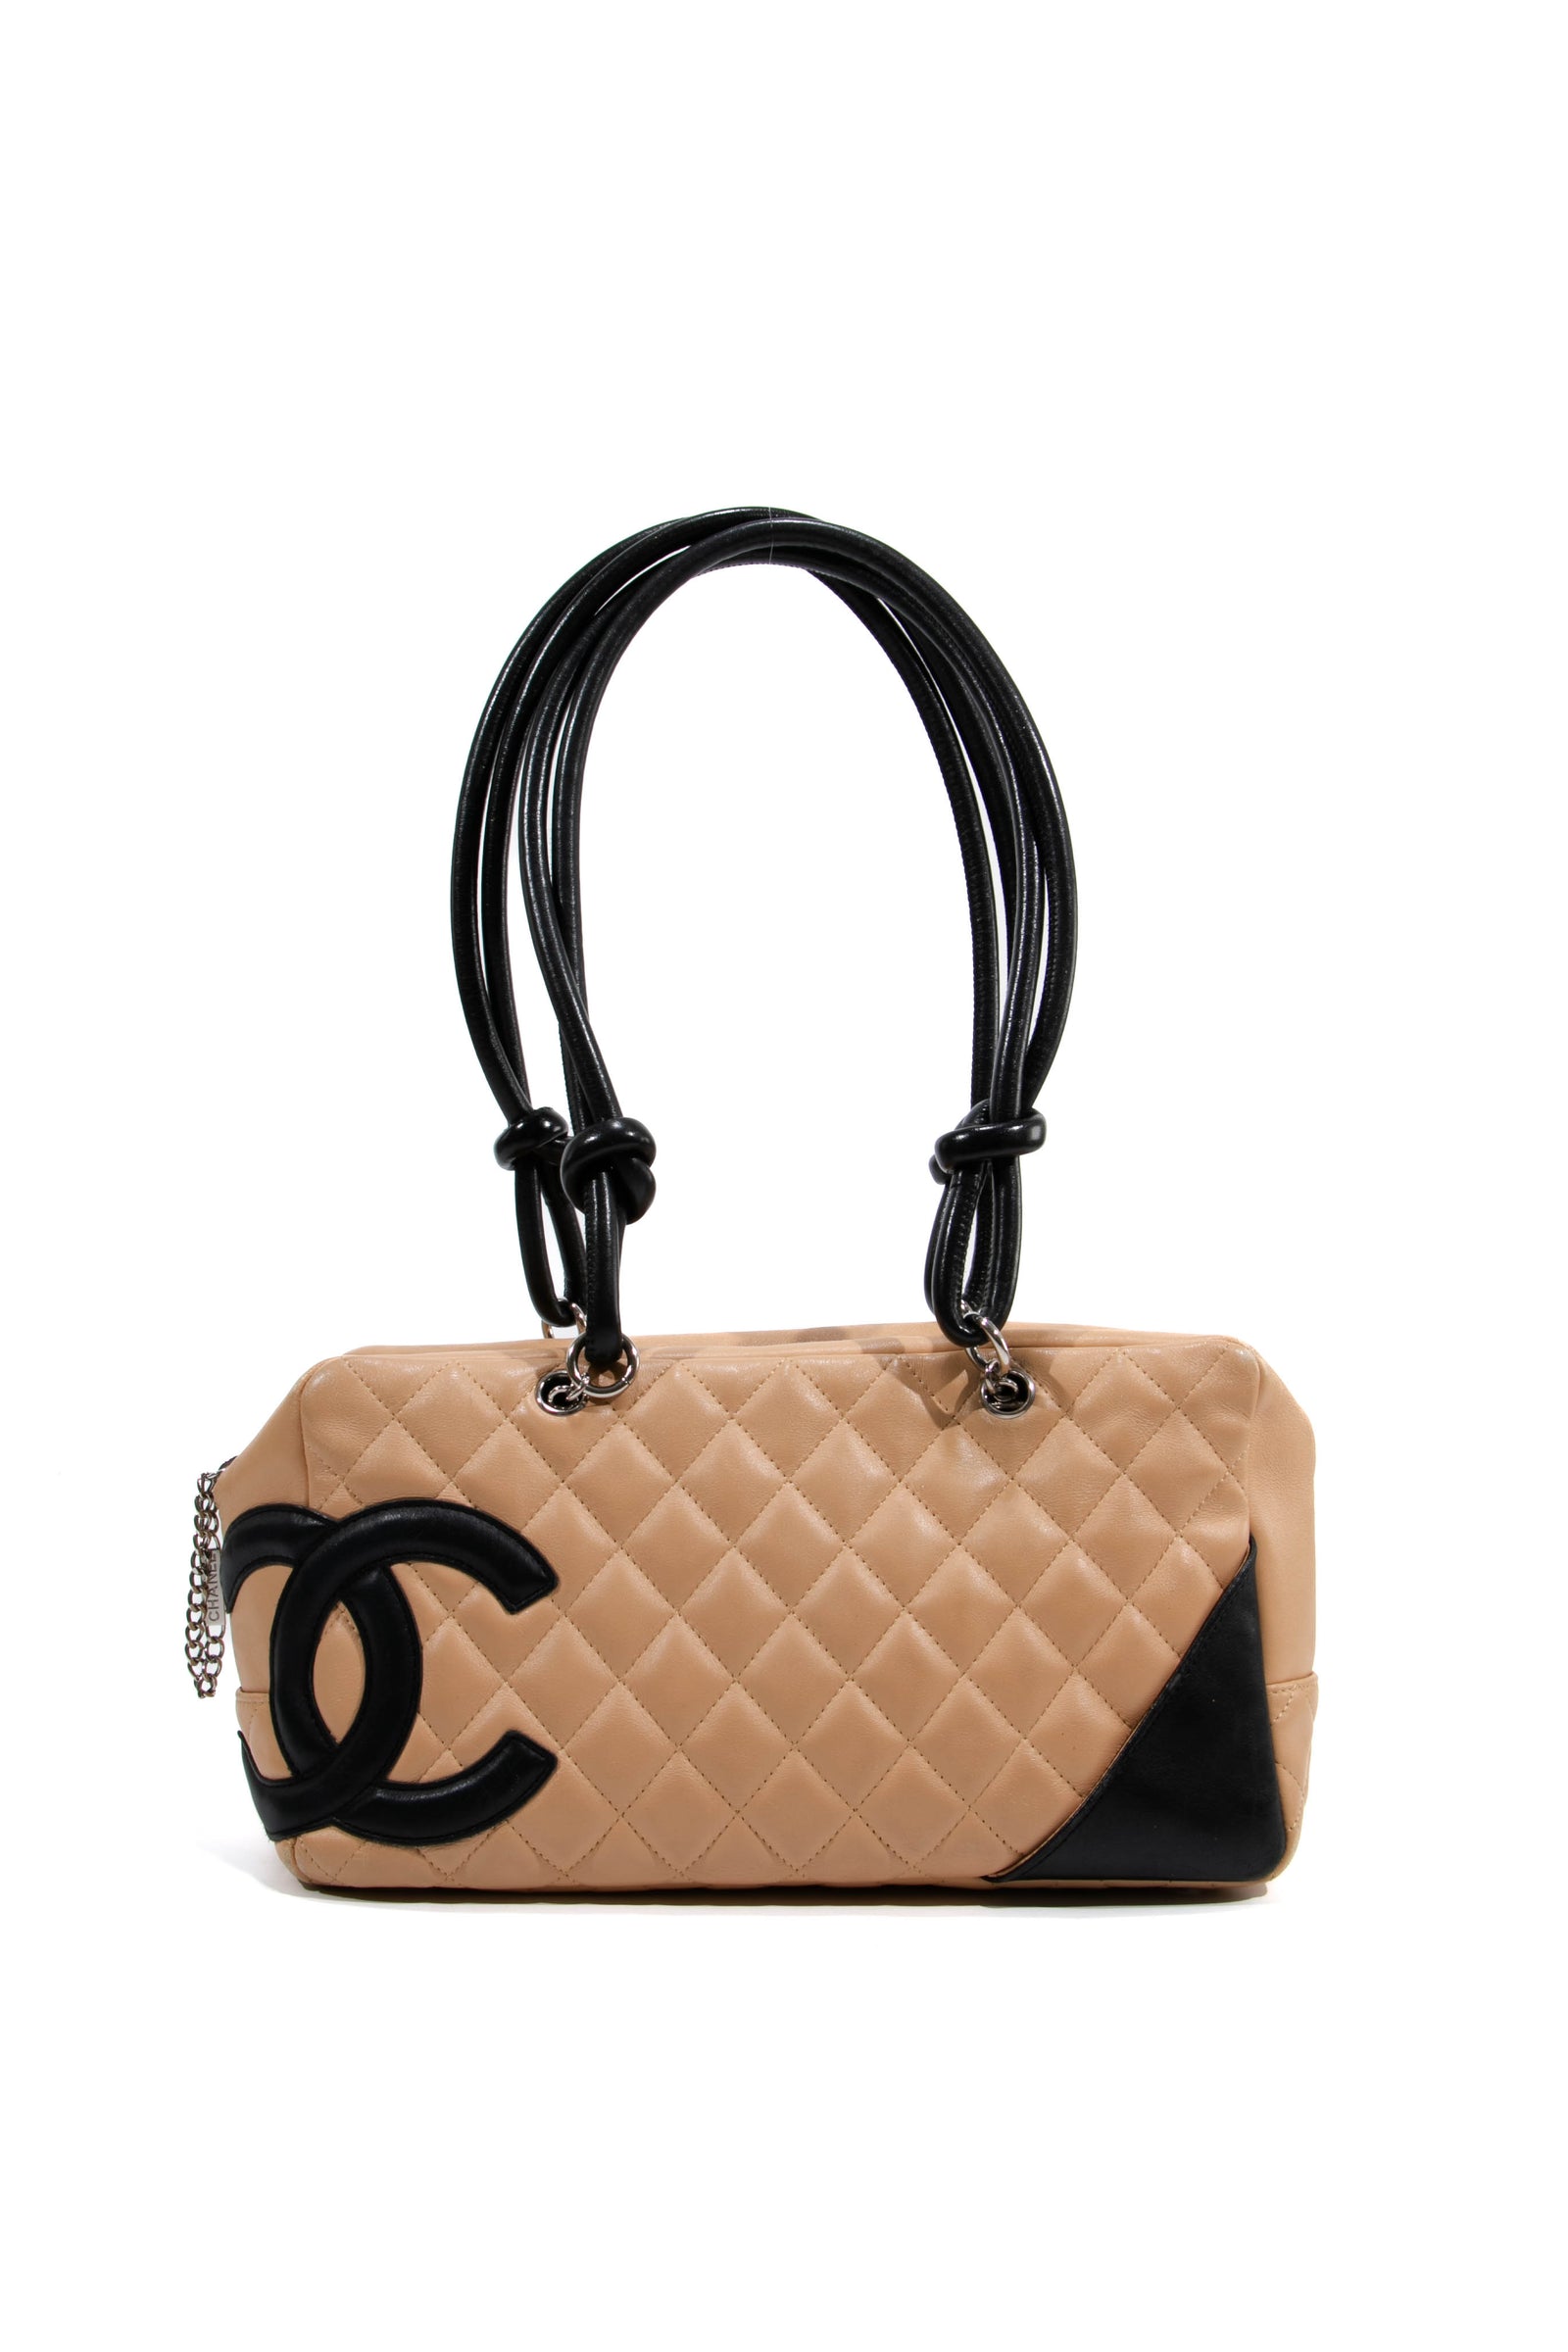 nedadgående halvleder kapitalisme Chanel tasker - Find din næste Chanel taske hos Collector's Cage –  Collectors cage